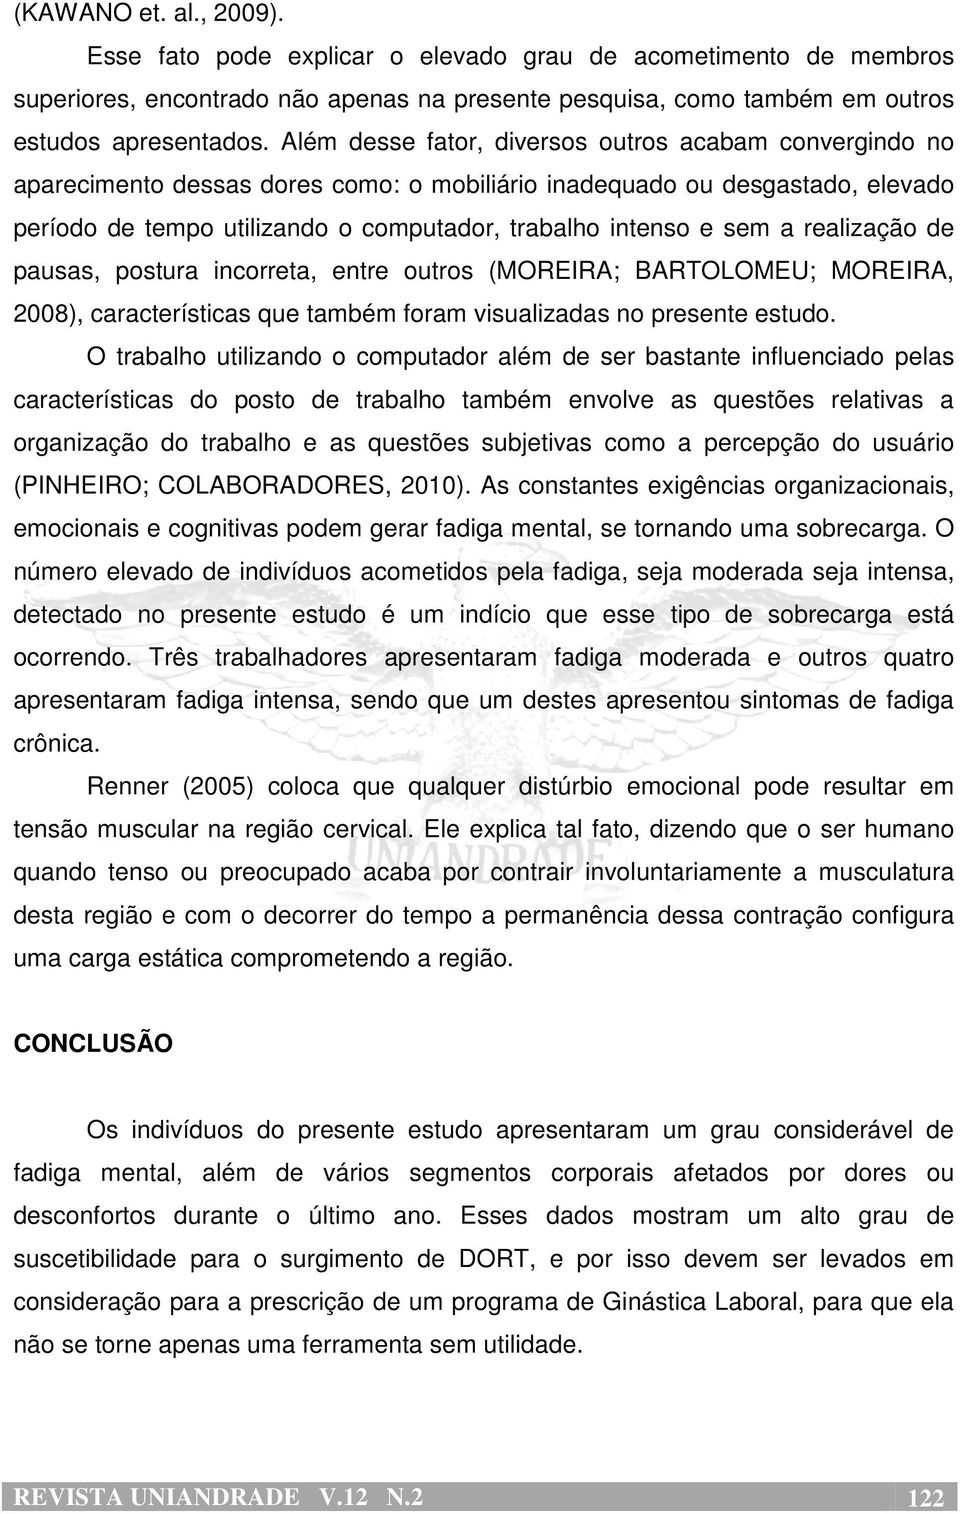 a realização de pausas, postura incorreta, entre outros (MOREIRA; BARTOLOMEU; MOREIRA, 2008), características que também foram visualizadas no presente estudo.